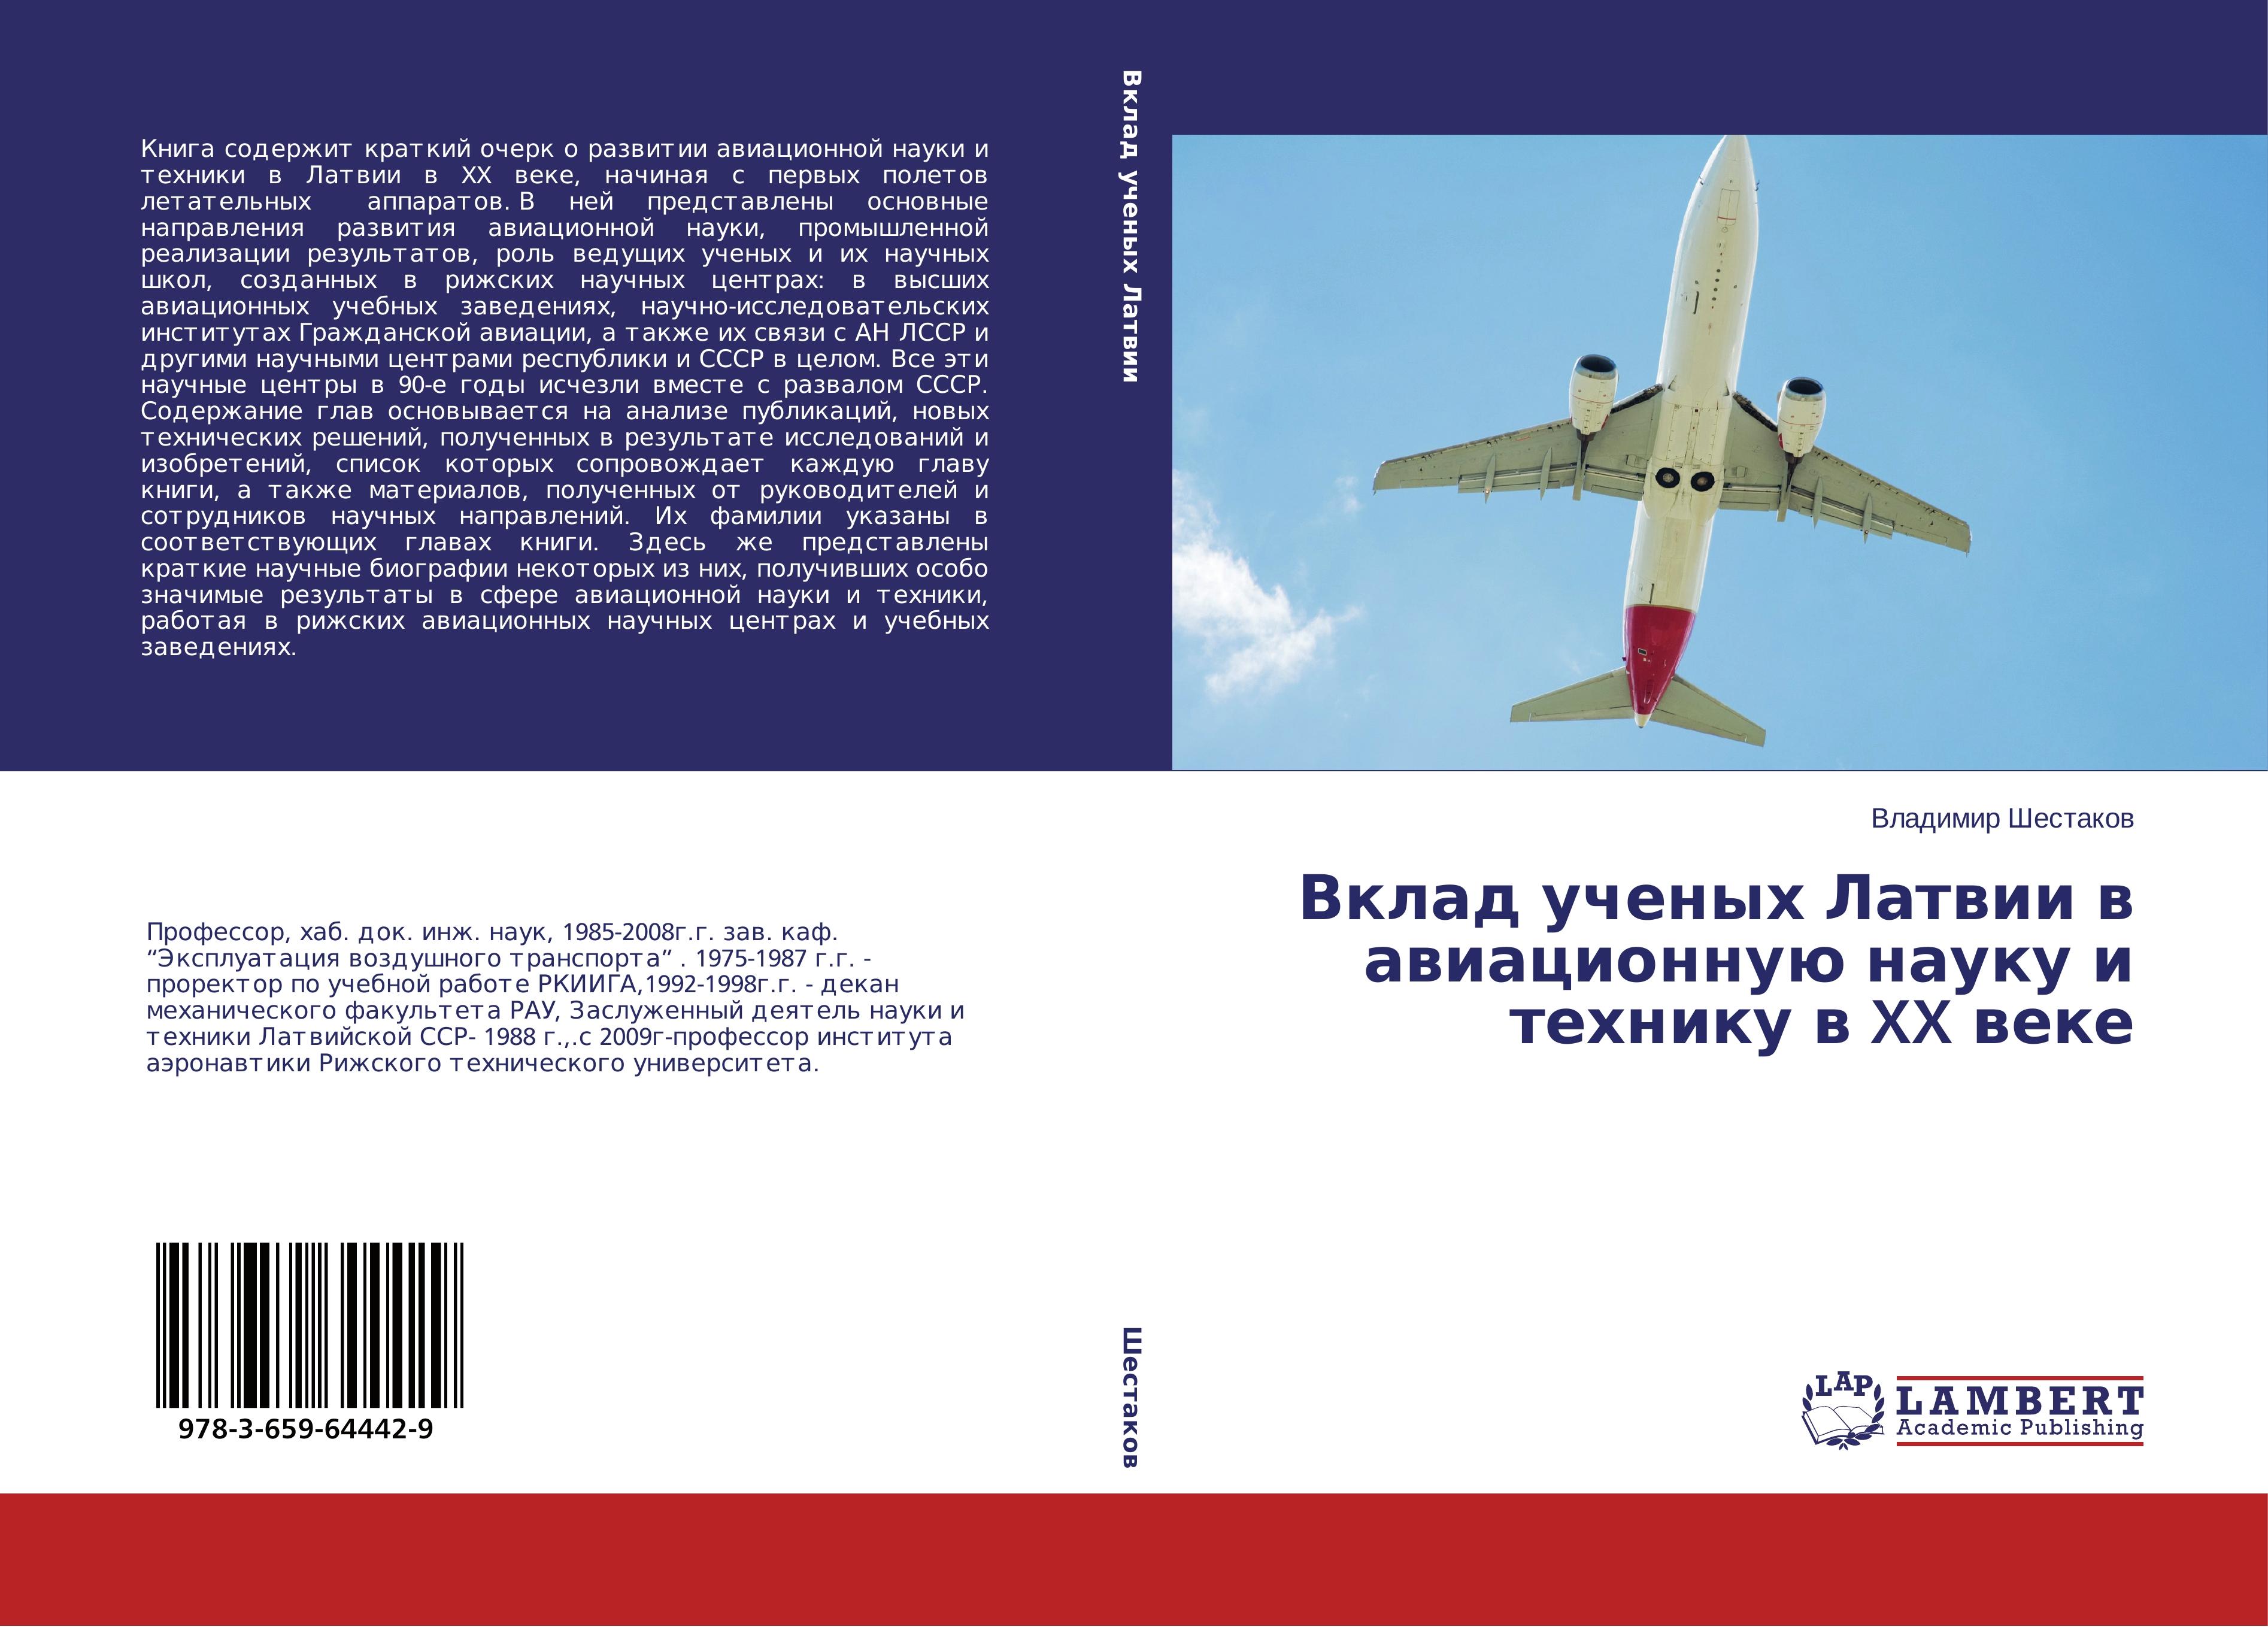 Vklad uchenykh Latvii v aviatsionnuyu nauku i tekhniku v XX veke - Shestakov, Vladimir